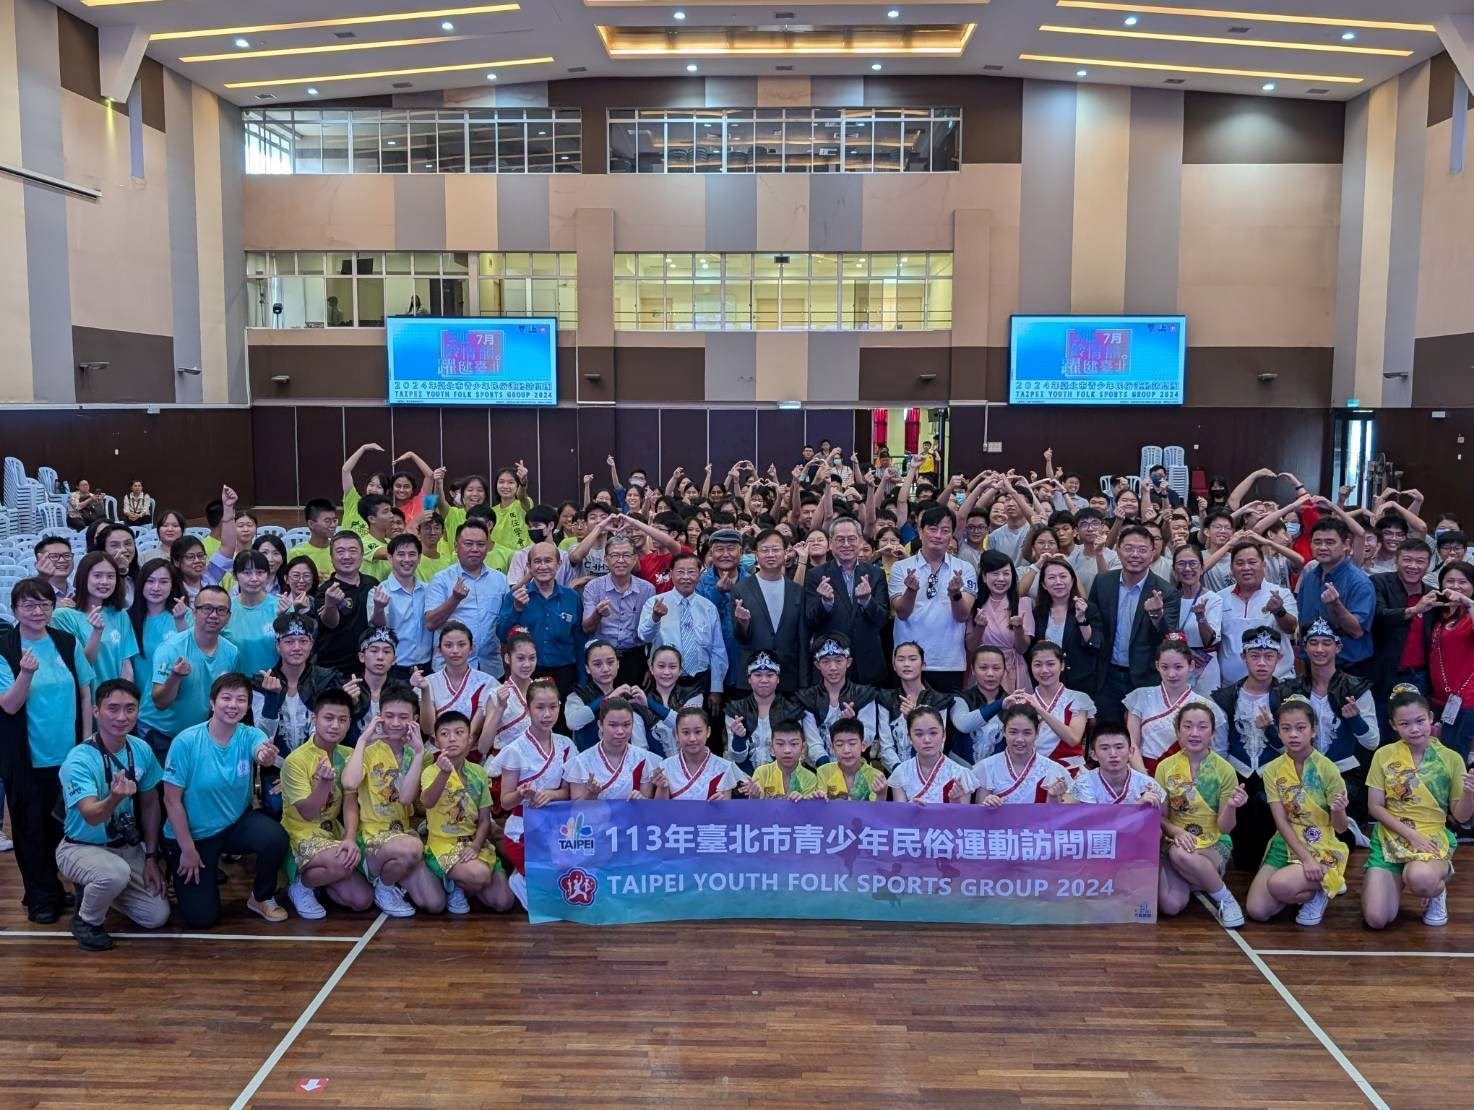 臺北市青少年民俗運動訪問團海外巡演獲得廣大迴響